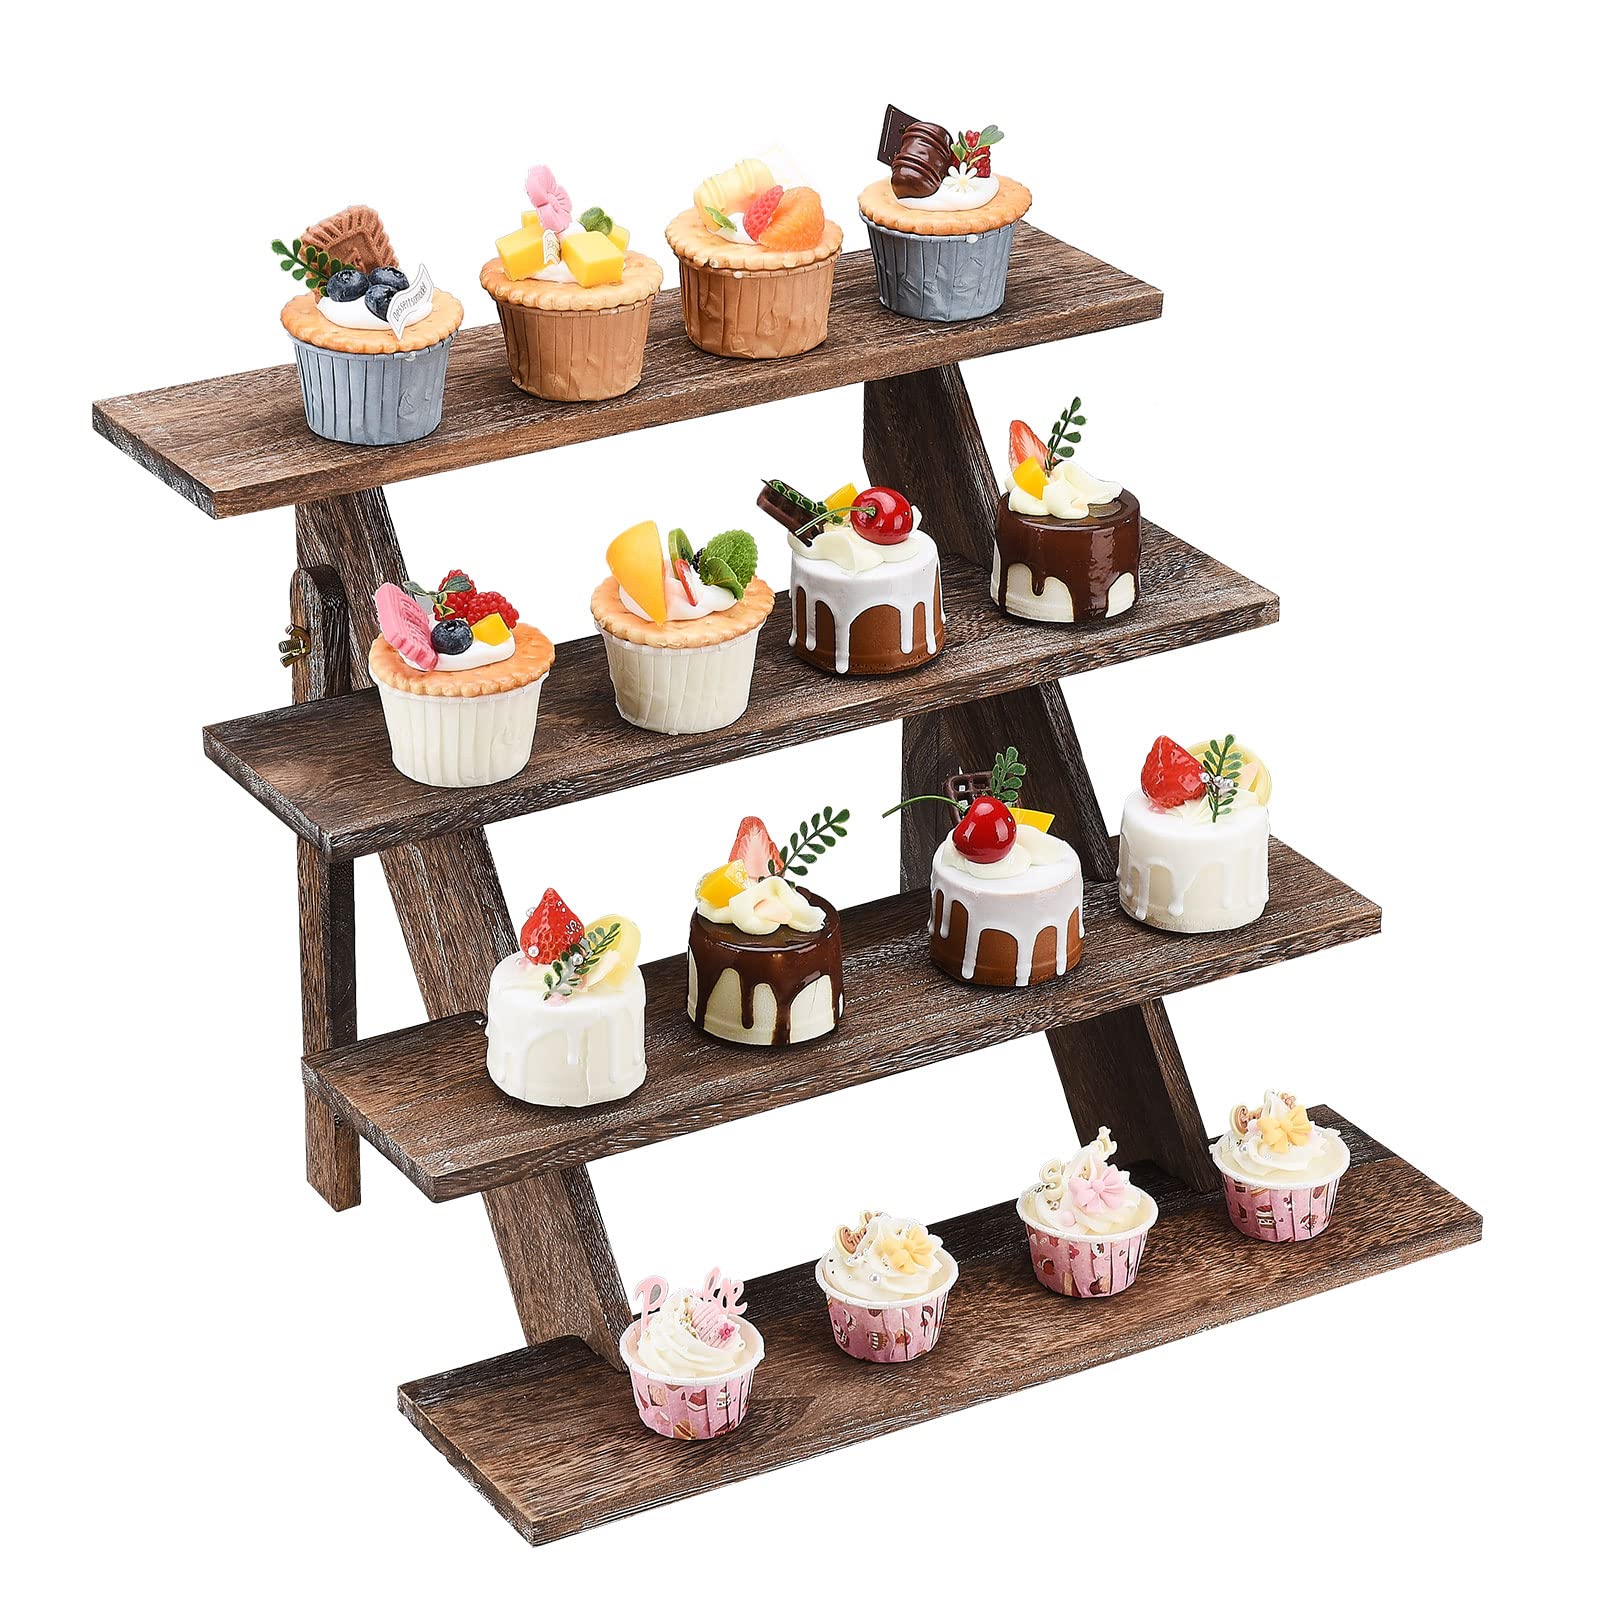 LIBOOI Cupcake-Ständer mit 4 Etagen, Kuchenständer aus Holz, Nachmittagsteeständer, Parfümständer, Multifunktions-Desserttisch, Pflanzenständer, Ausstellungsständer, Bastelschmuck(Dunkelbraun)